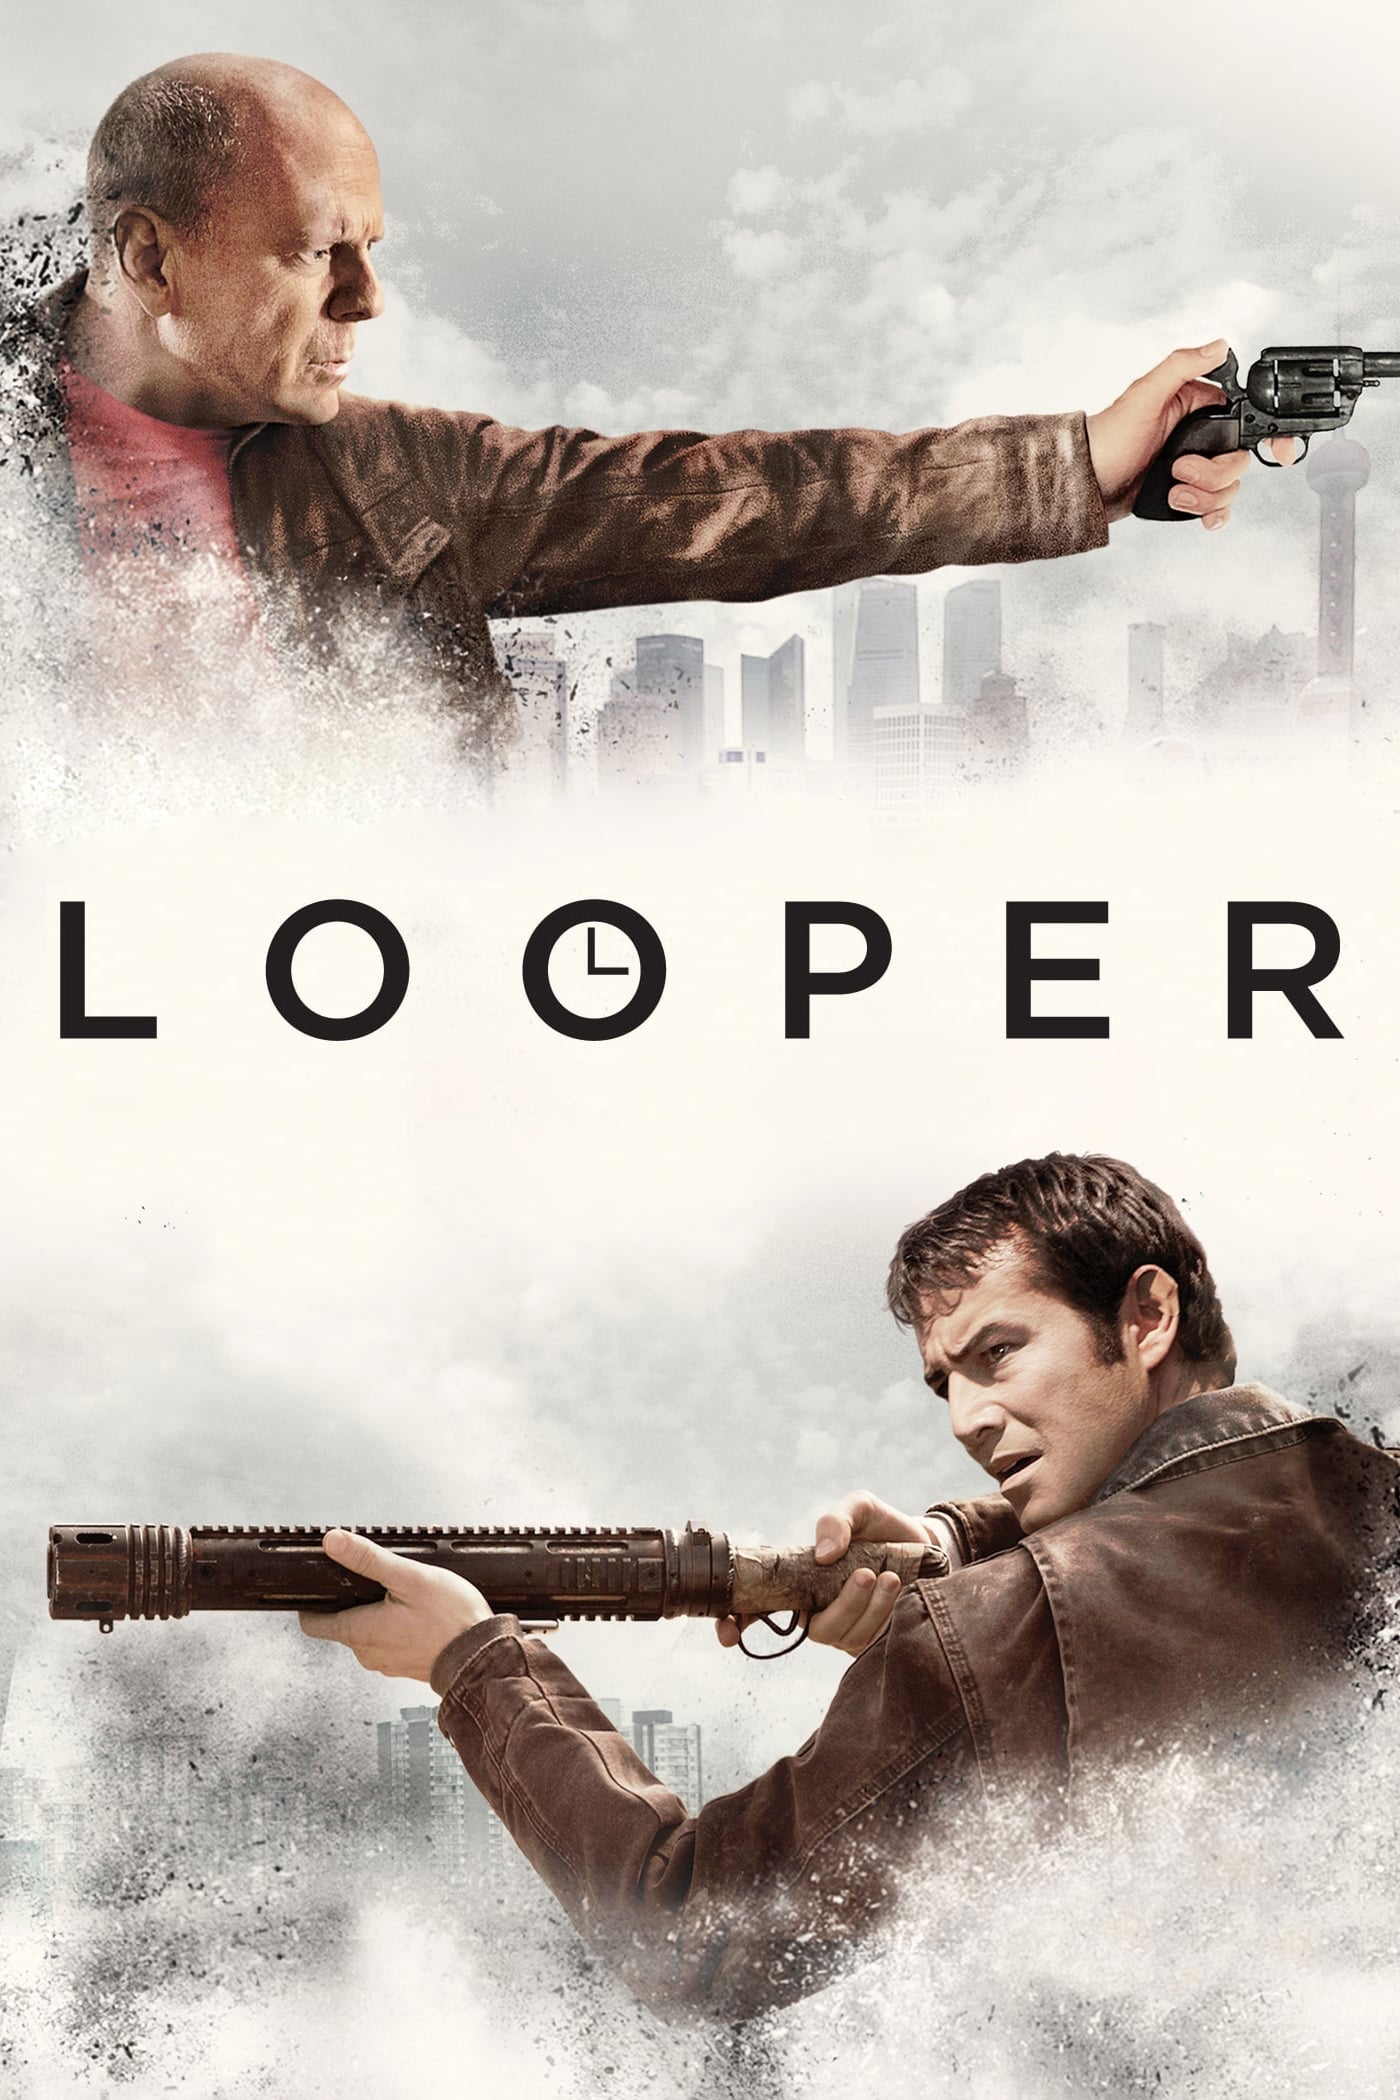 Looper: Assassinos do Futuro (2012)